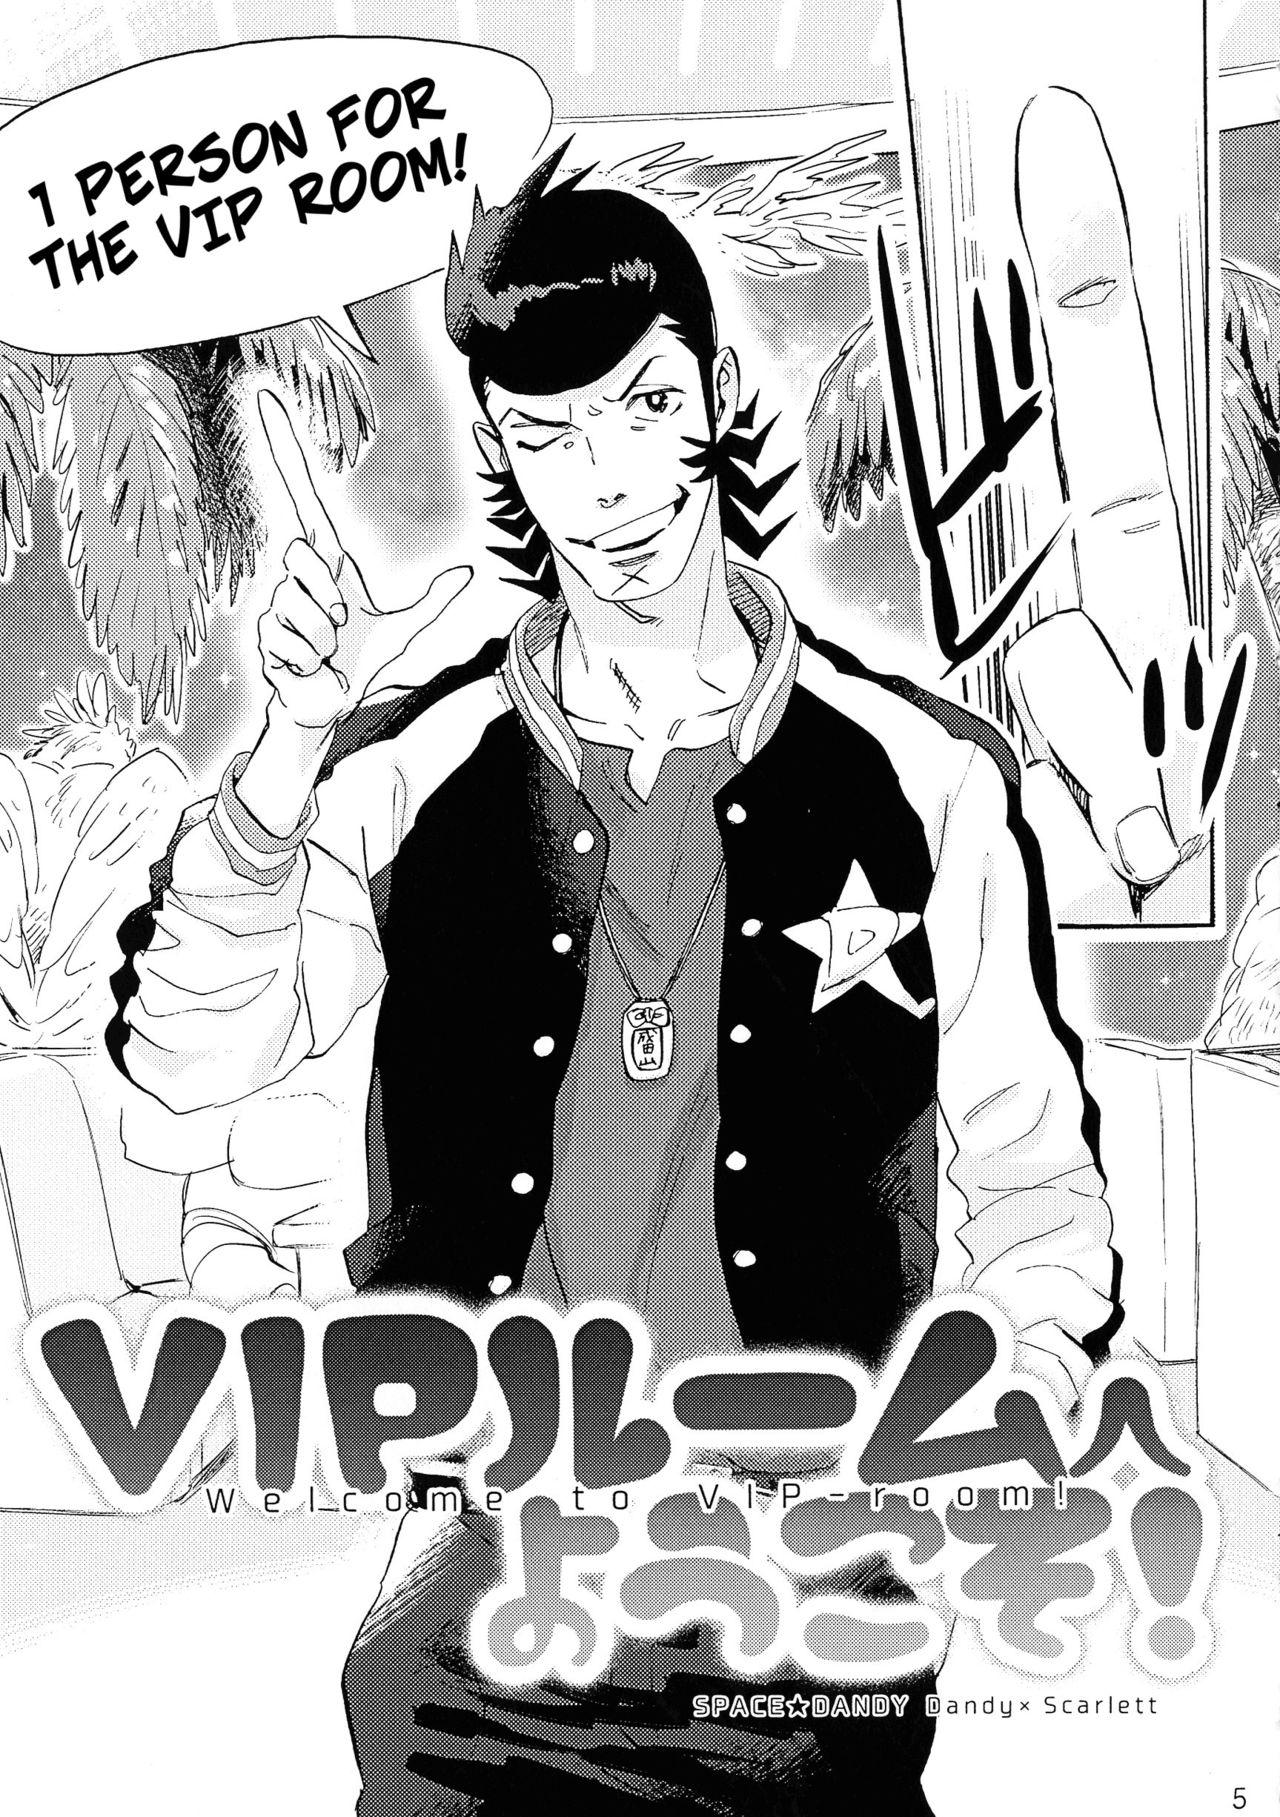 Passion [Buchimake Matsuri (Mizubuchi Maki)] VIP Room e Youkoso! - Welcome to VIP-room! (Space Dandy) [English] [CopyOf] [2019-09-07] - Space dandy Hardon - Page 4